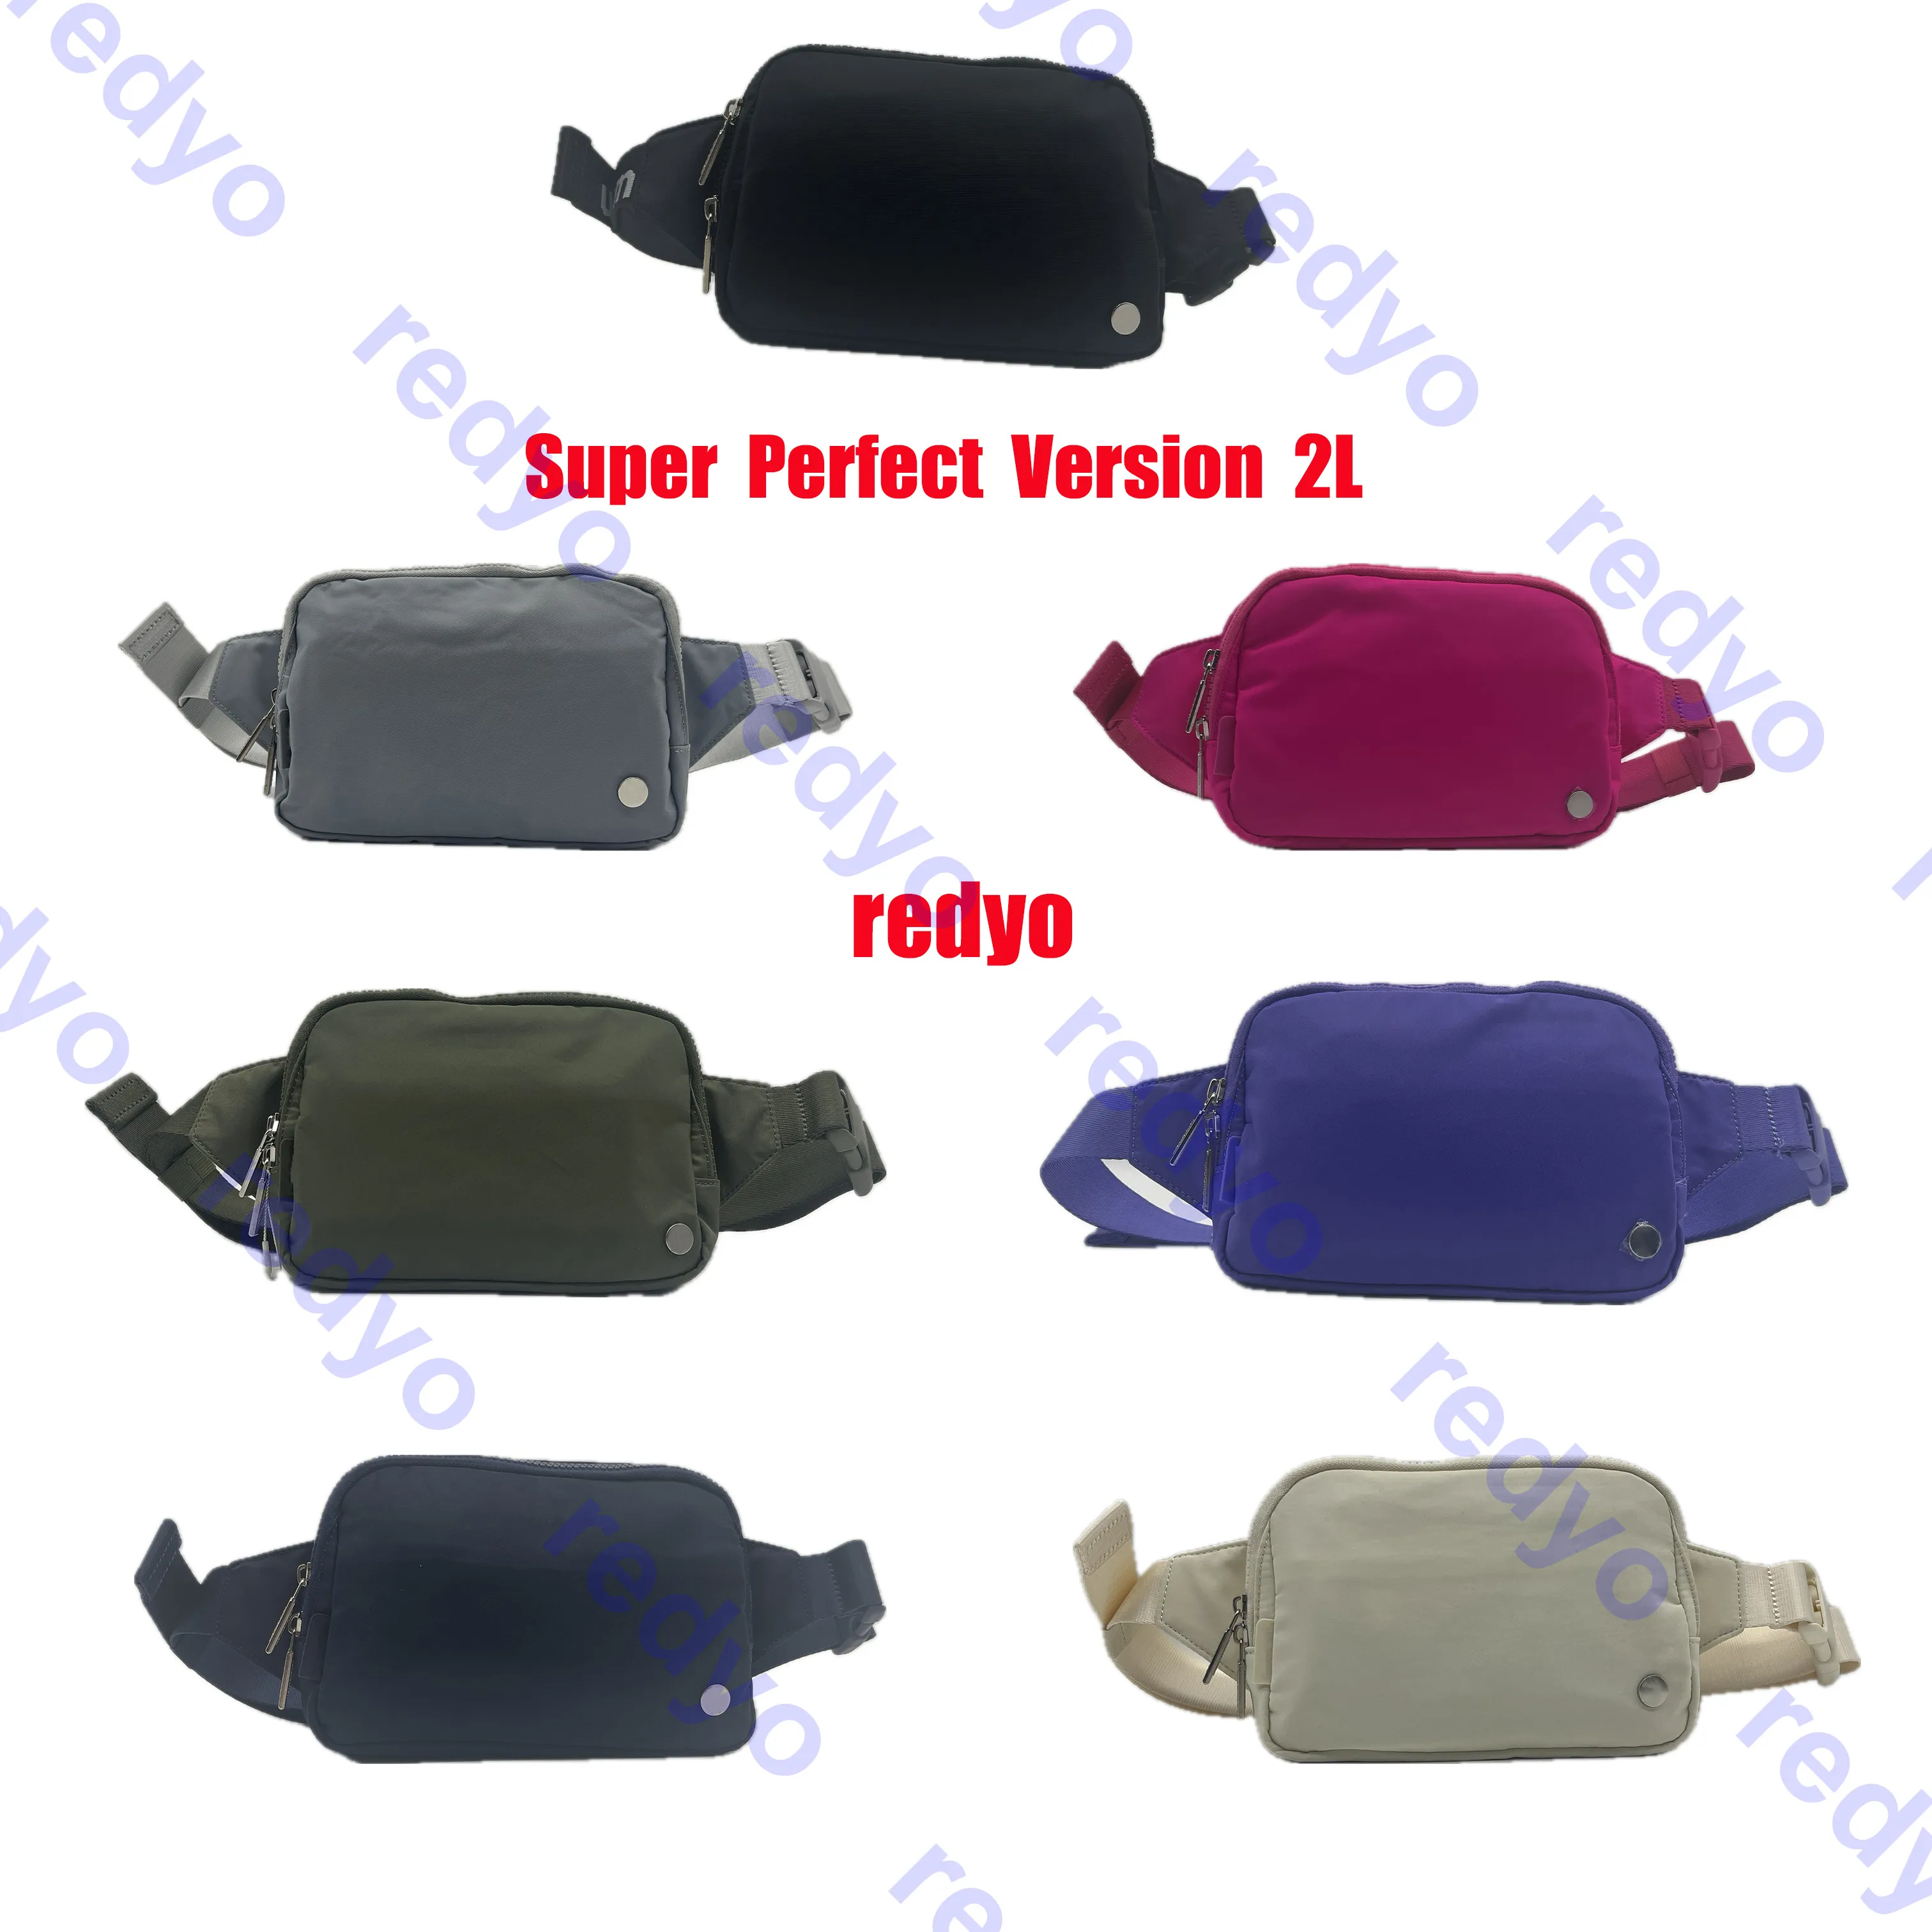 Wszędzie torebka paska duże 2L Super Perfect Versio Srebrne logo Najwyższa jakość fabrycznej sprzedaży bezpośredniej TABY TAB TAMAK GYM Fanny Pack Outdoor Bags